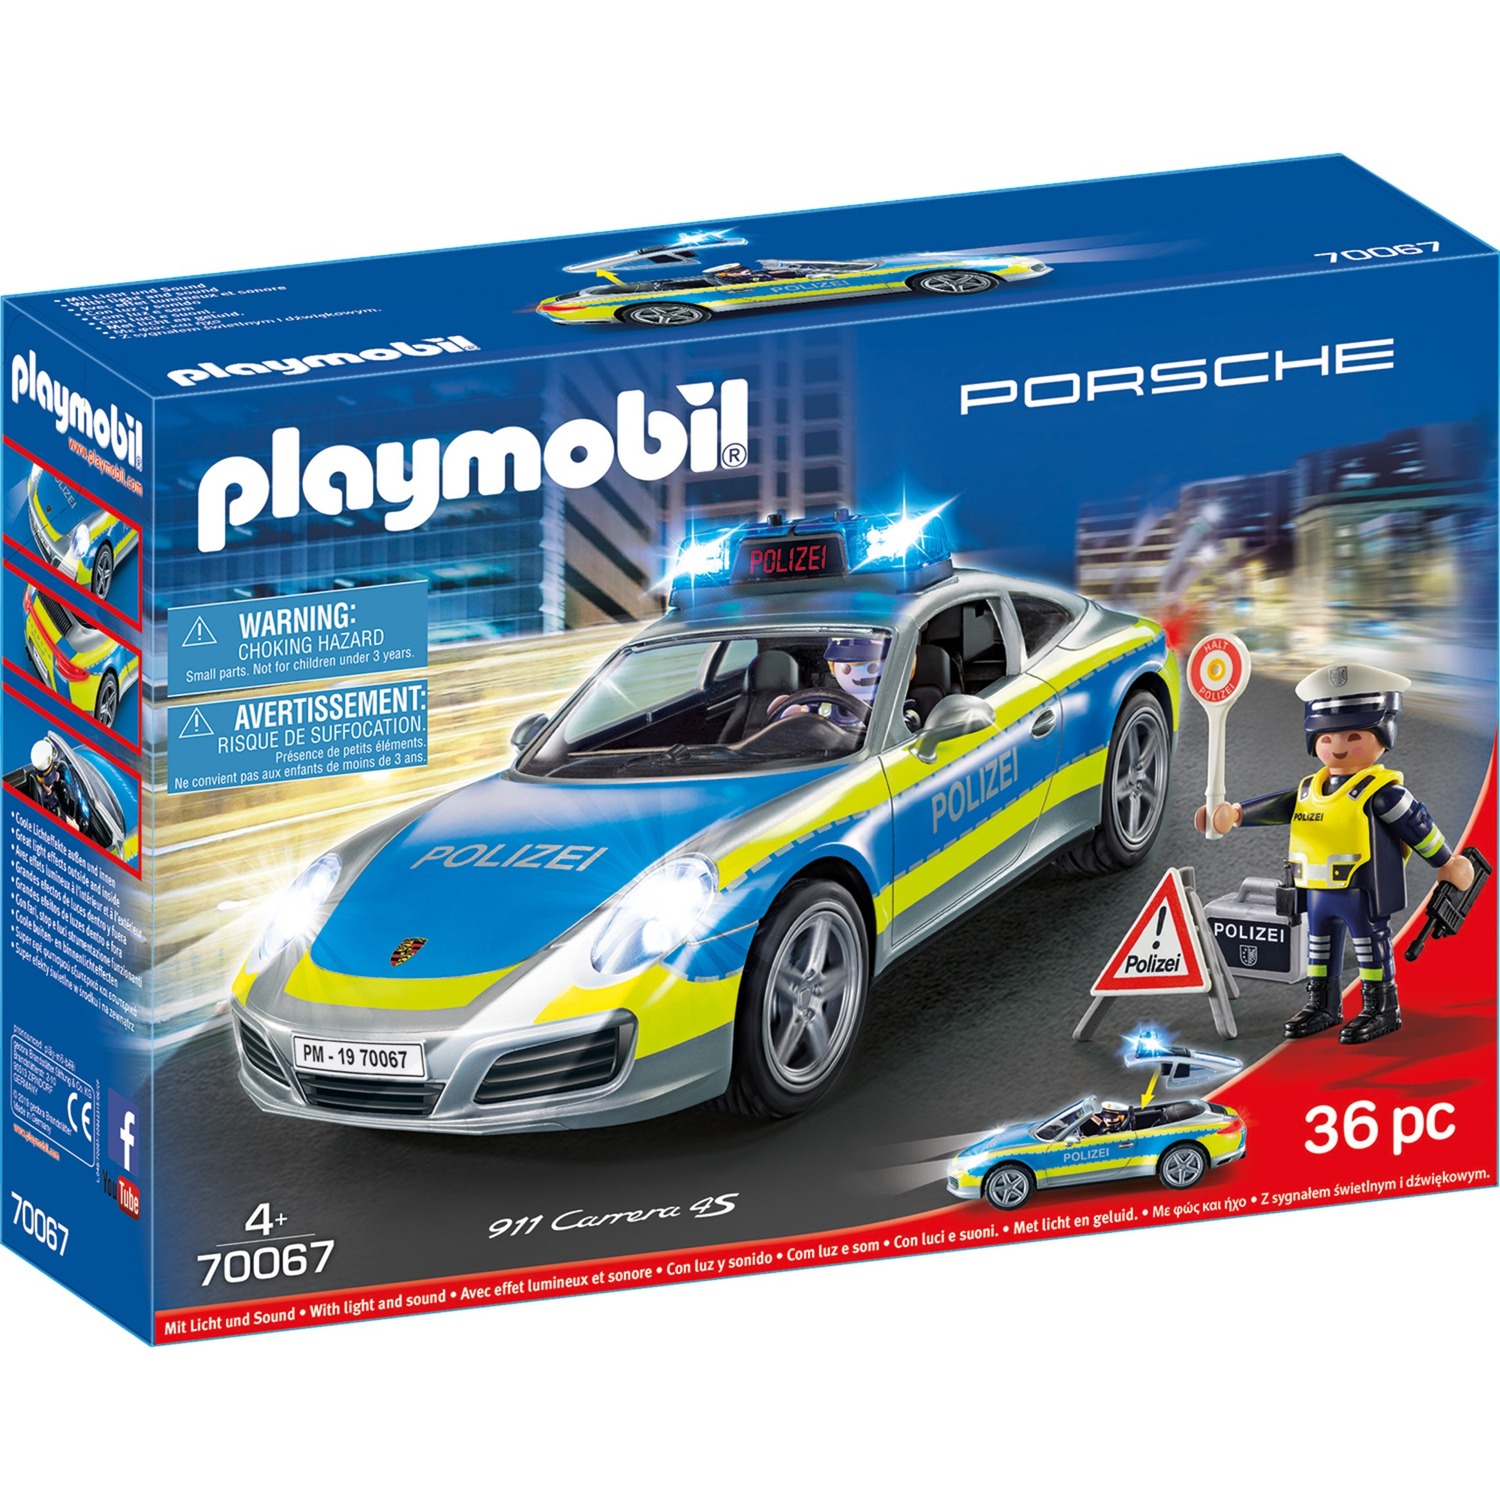 70067 City Action Porsche 911 Carrera 4S Polizei, Konstruktionsspielzeug von PLAYMOBIL